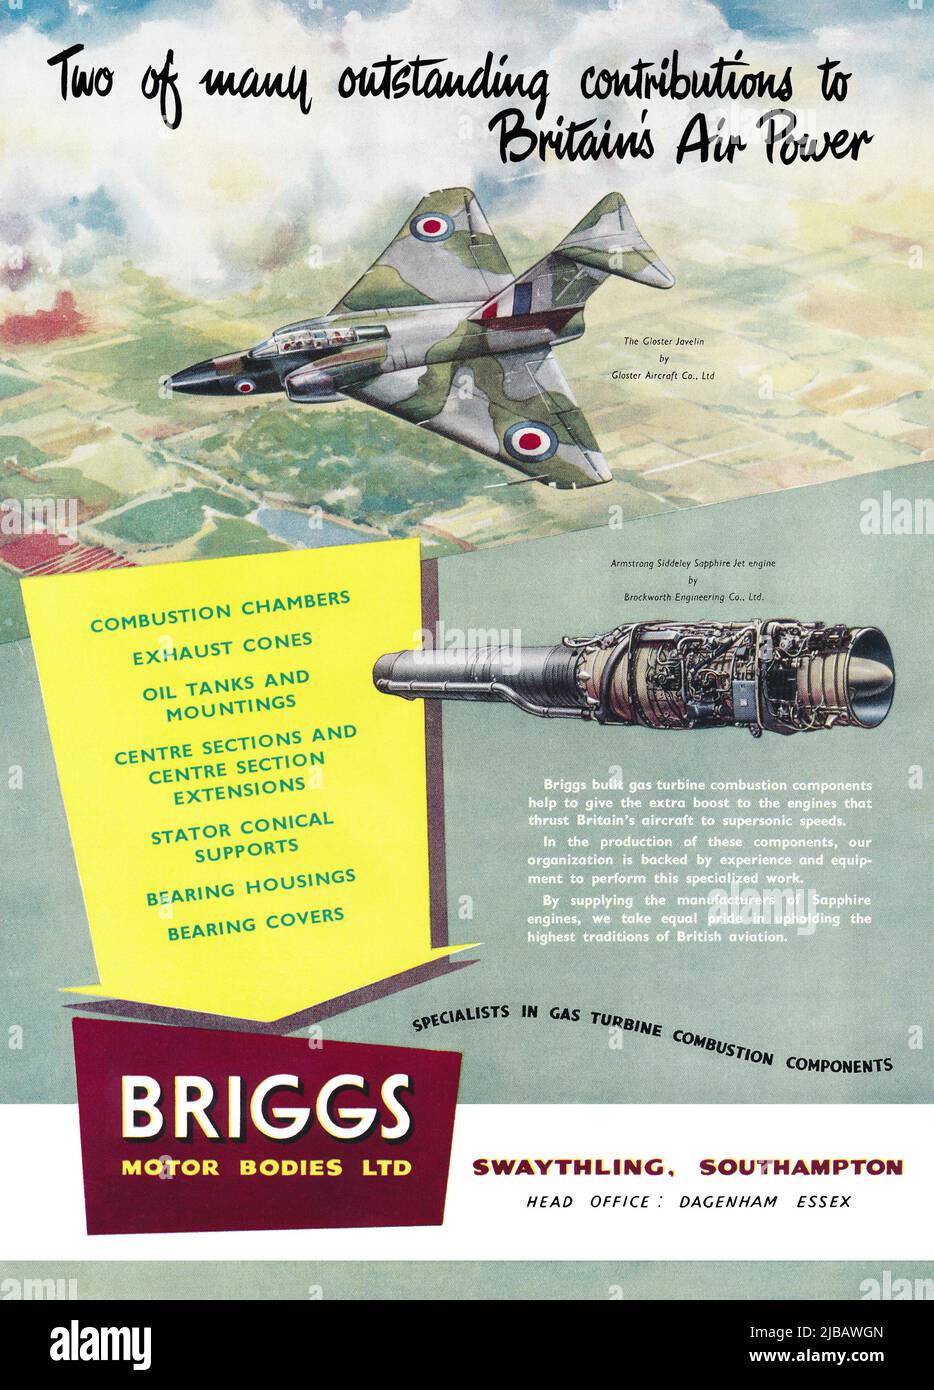 1955 Anuncio británico para Briggs Motor Bodies Ltd, fabricantes de componentes de ingeniería de aviación para motores de turbina de gas, mostrando un Meteor Gloster con el motor de reacción Armstrong Siddeley Sapphire. Foto de stock